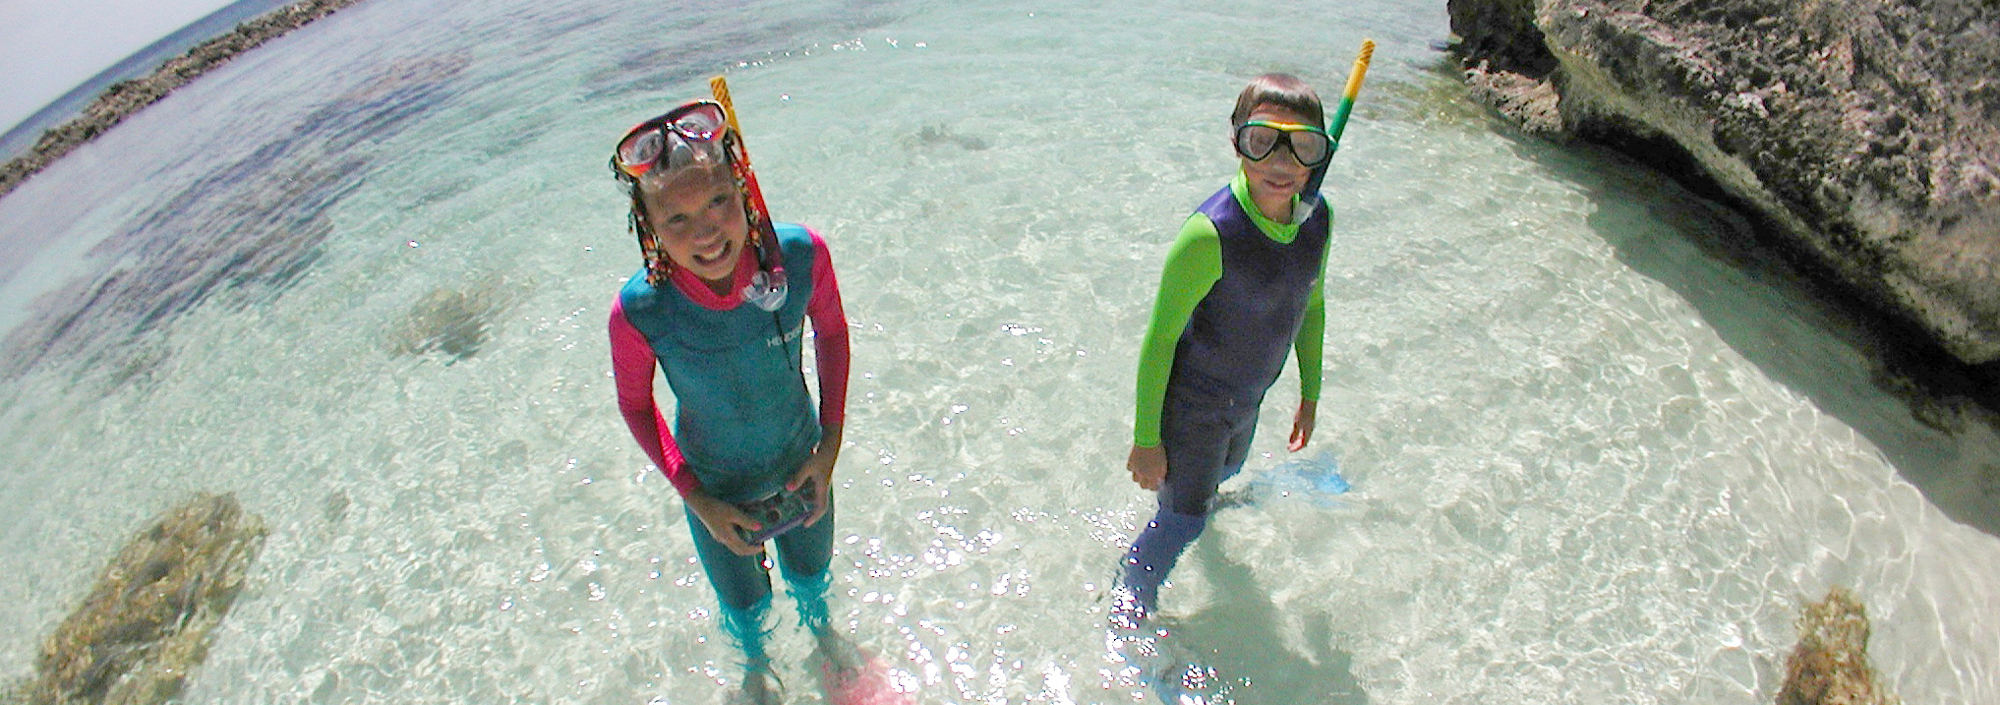 Kinder mit Schnorchelausrüstung im Wasser auf Bonaire